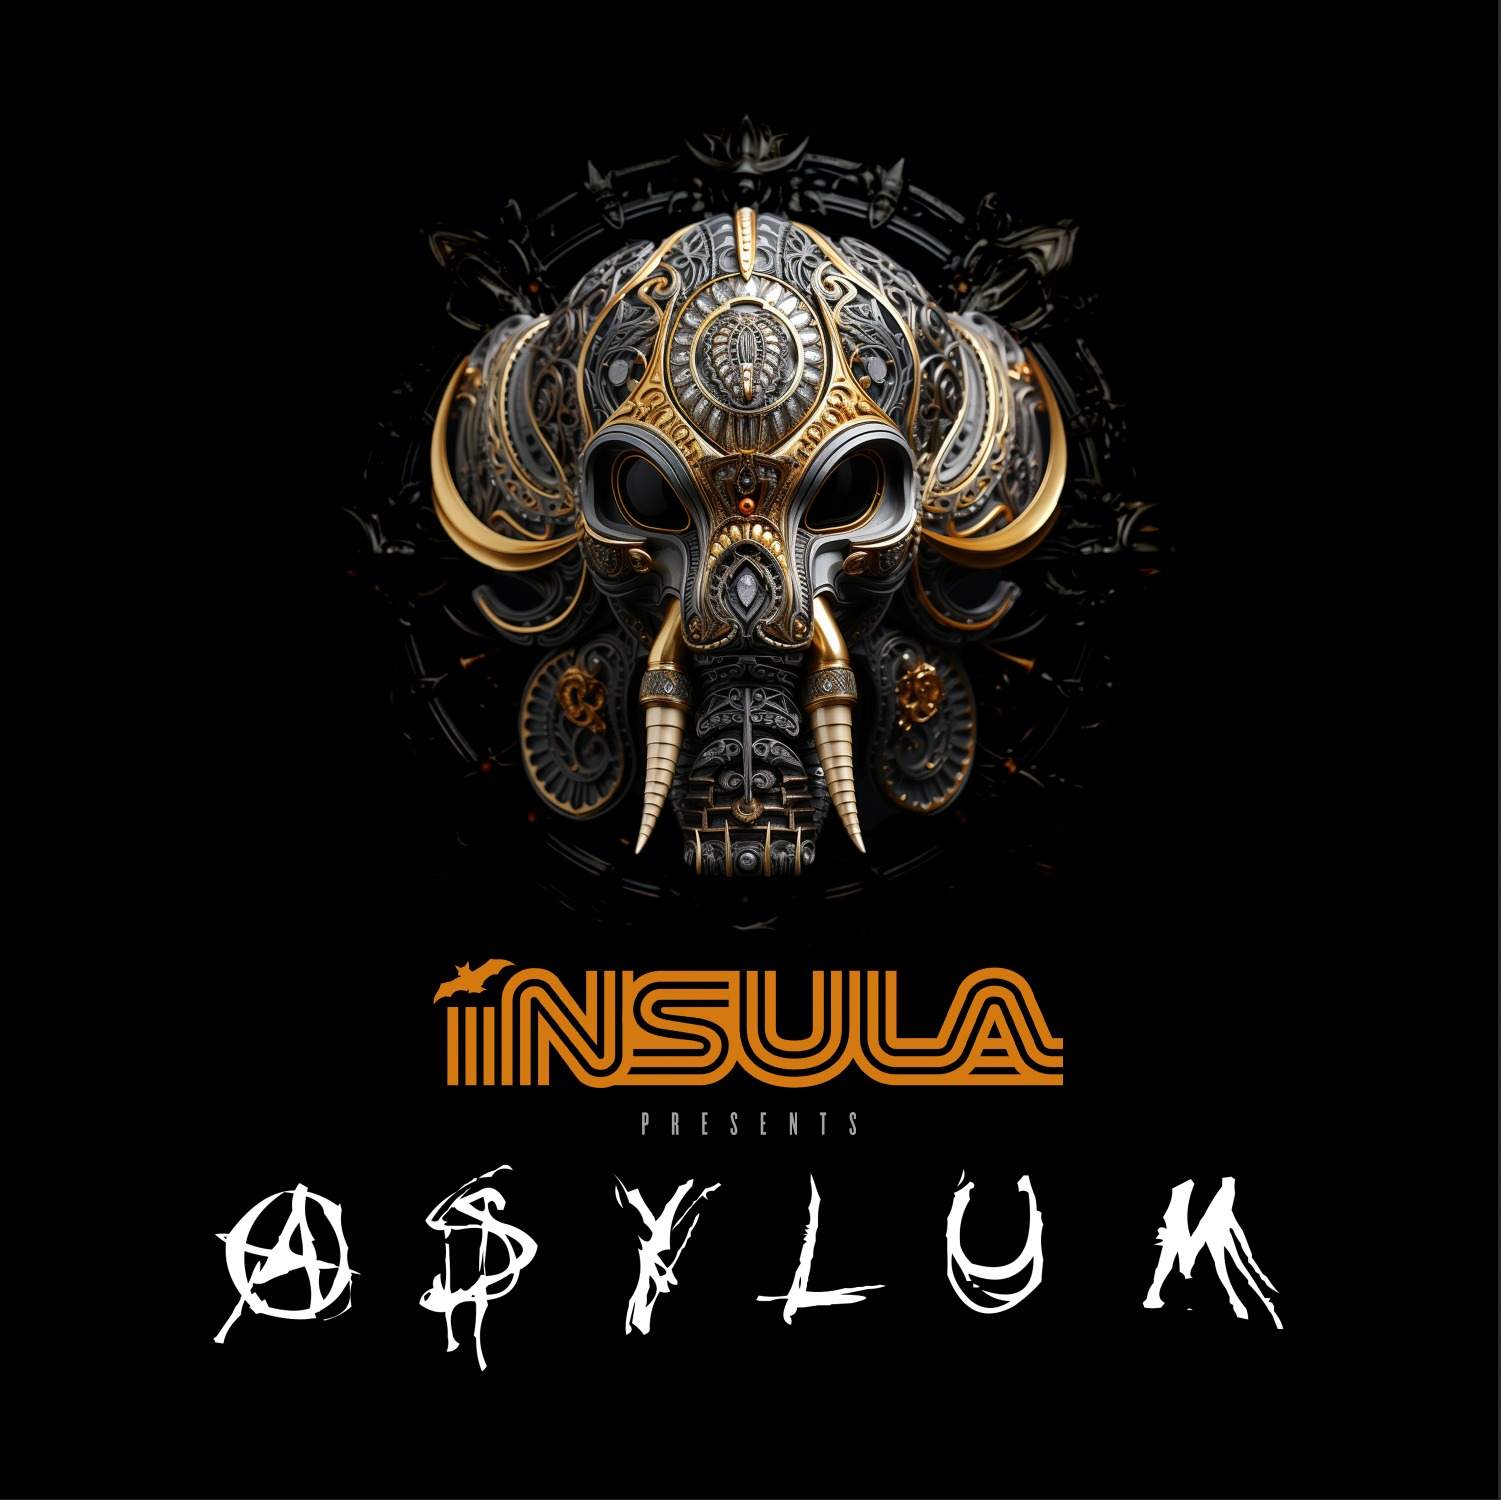 [CANCELLED] Insula presents ASYLUM - Página frontal